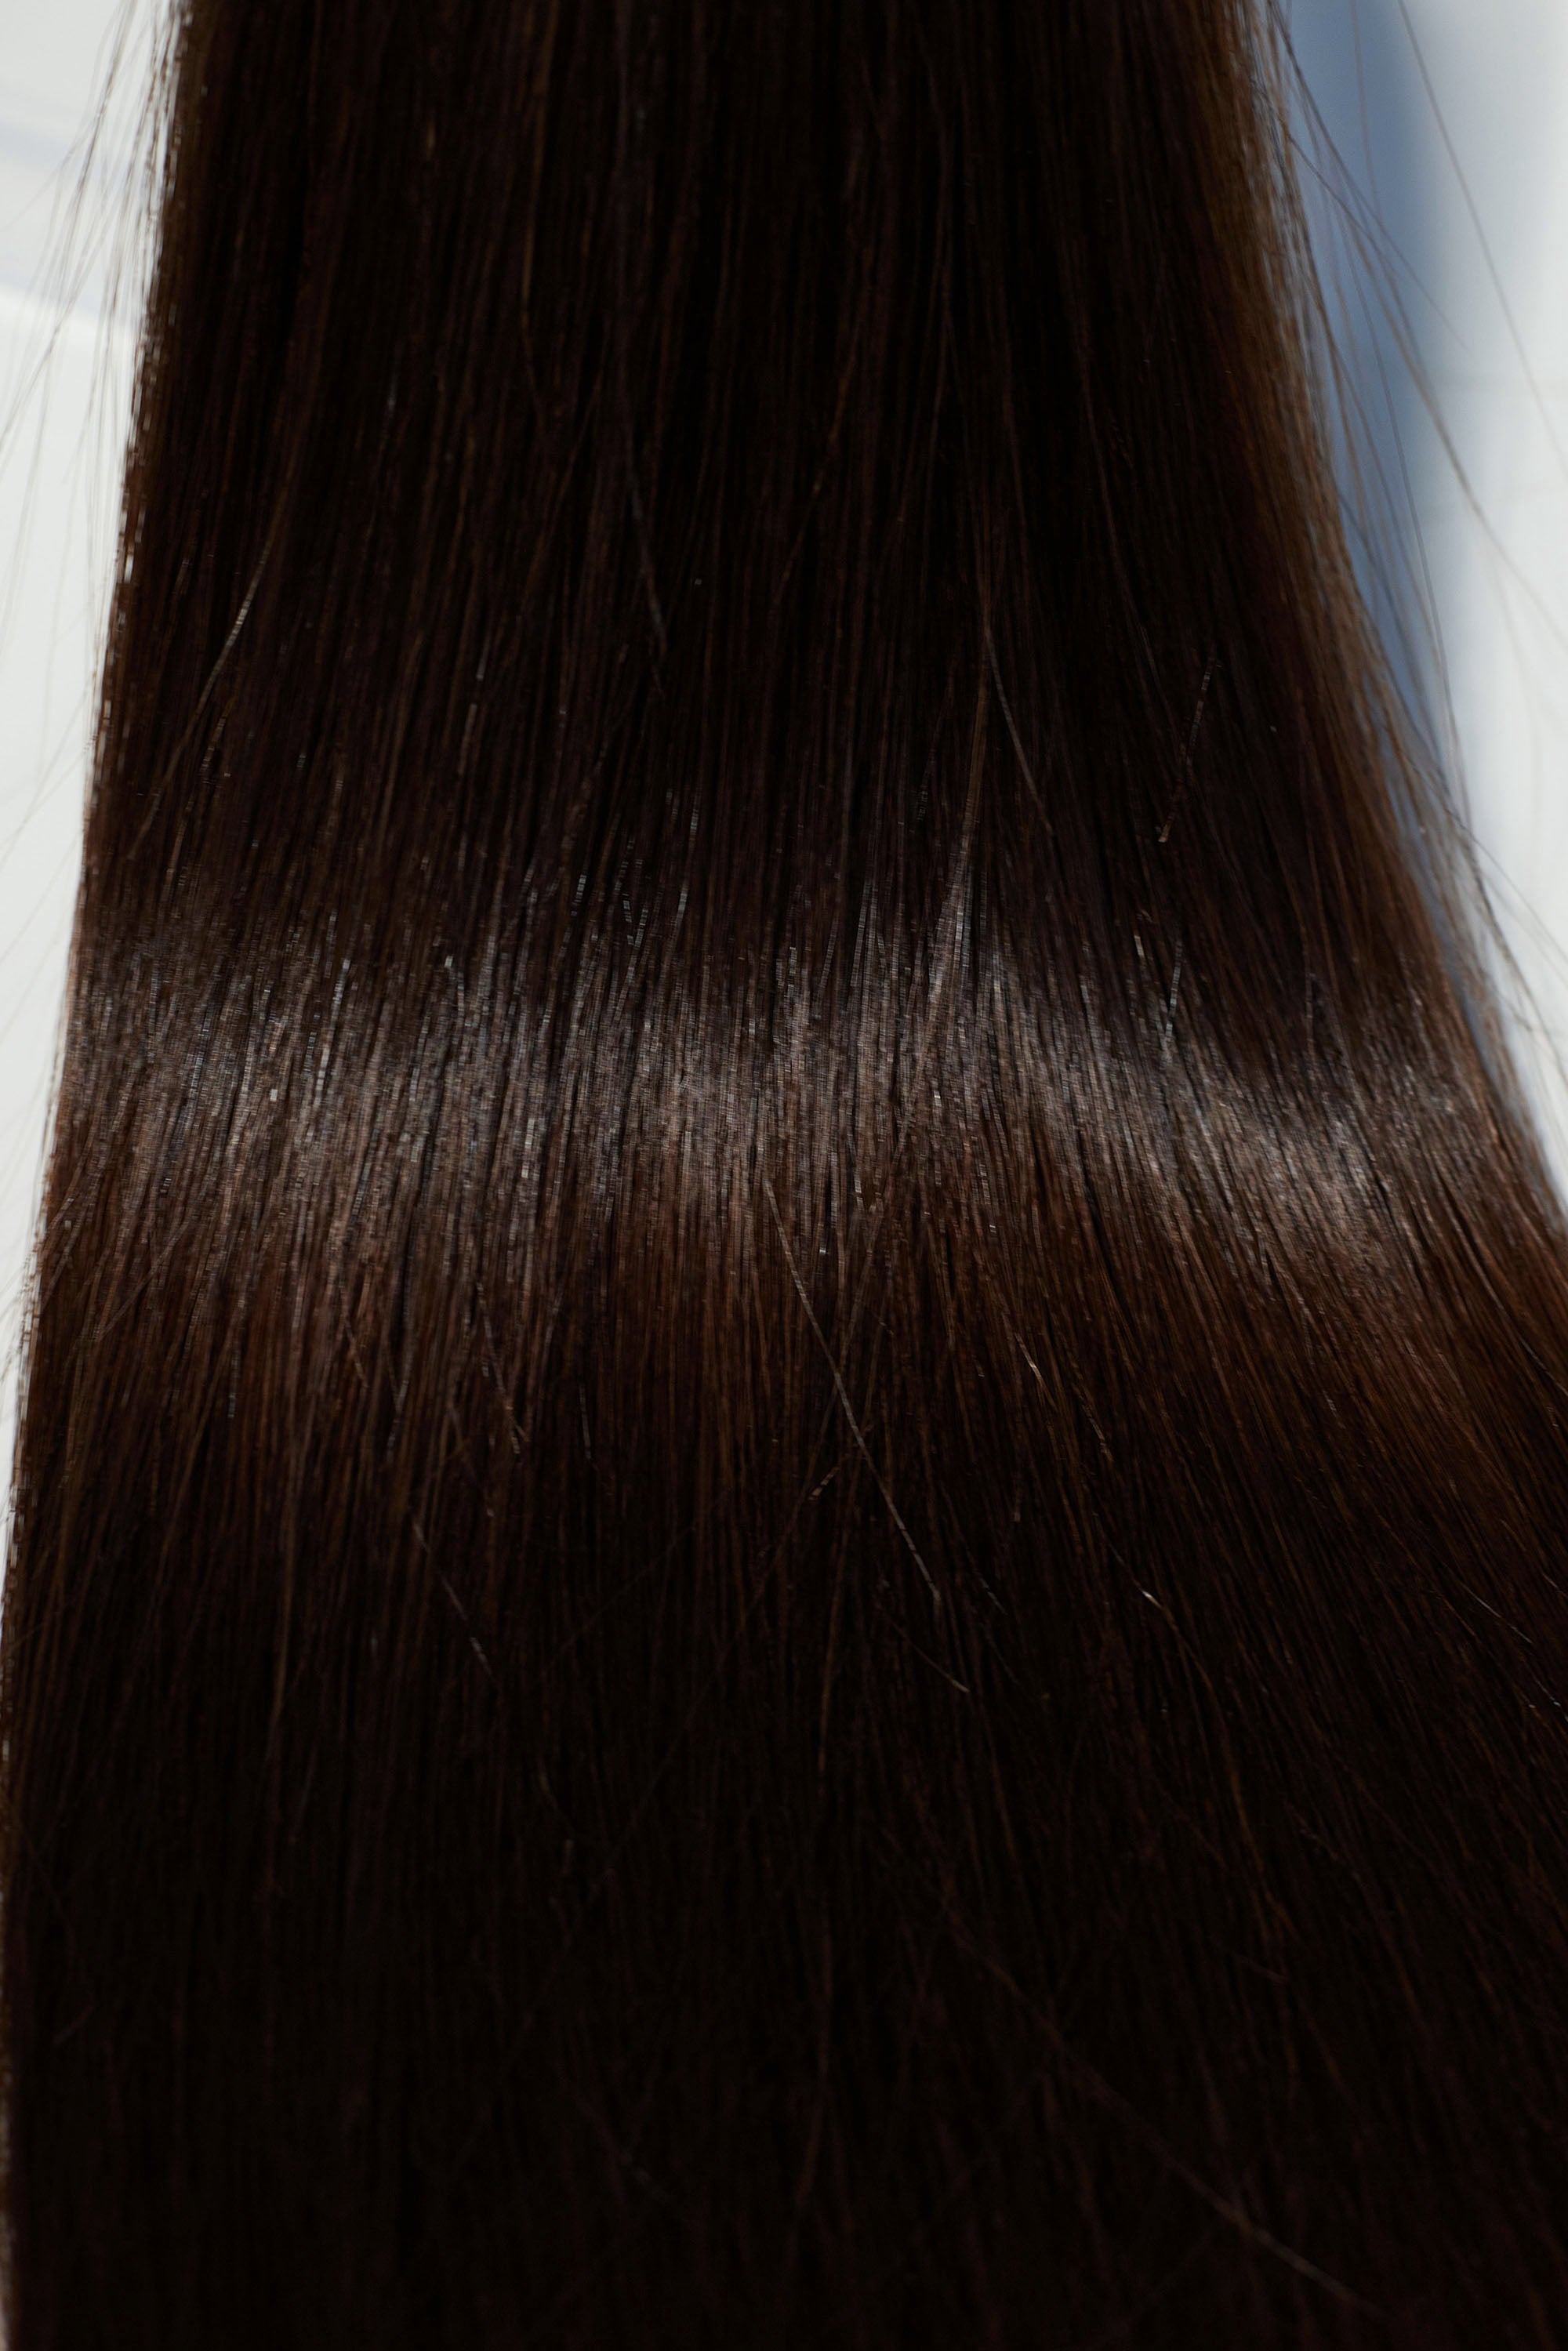 Behair professional Keratin Tip "Premium" 26" (65cm) Natural Straight Dark Coffee Brown #2 - 25g (1g each pcs) hair extensions